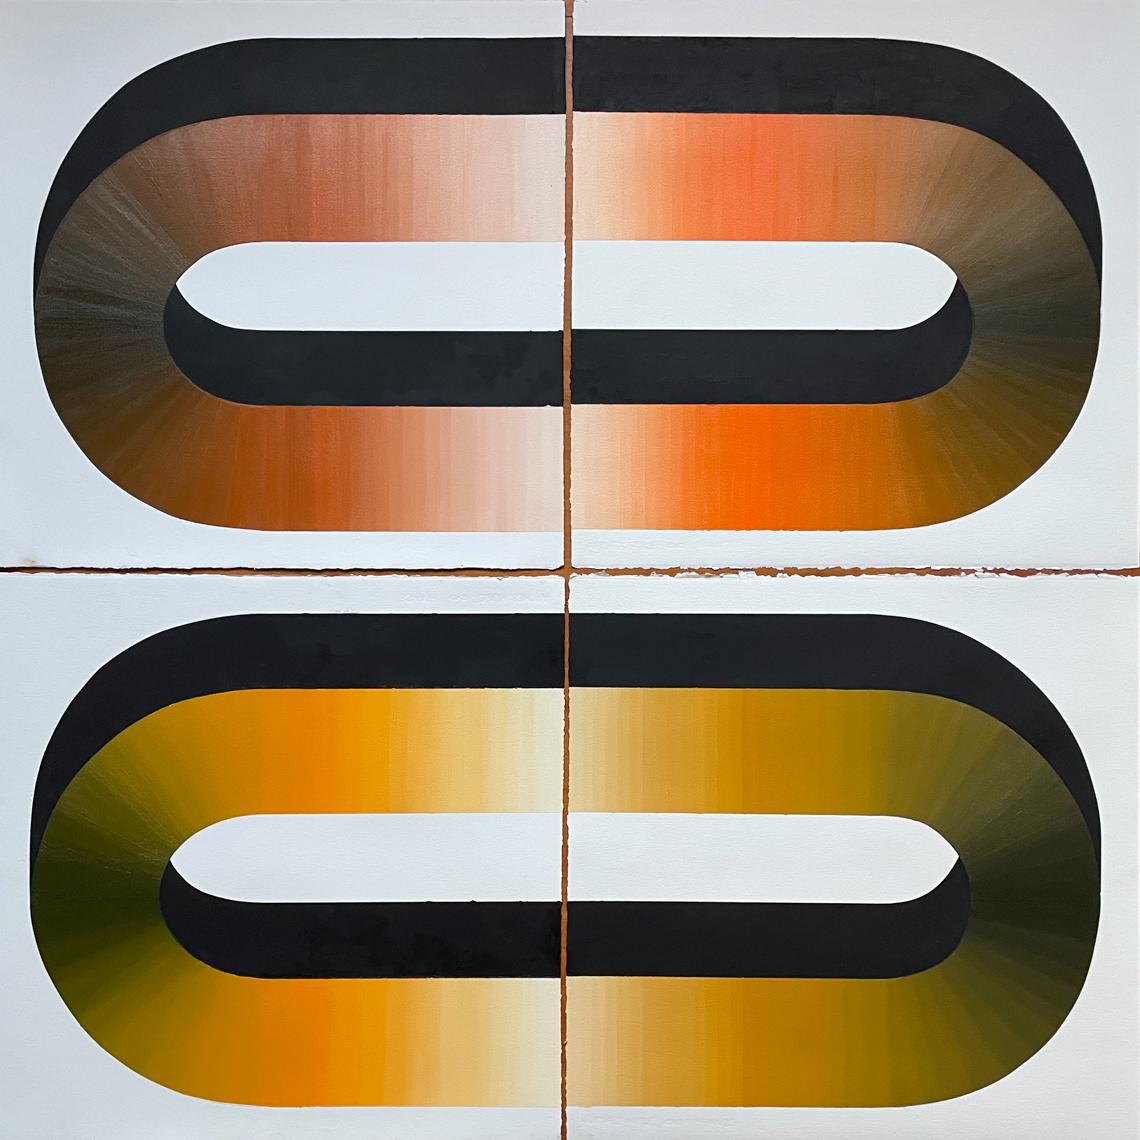 Abstrakte Postmoderne Formen in Gelb und Orange – Mixed Media Art von Stella Alesi